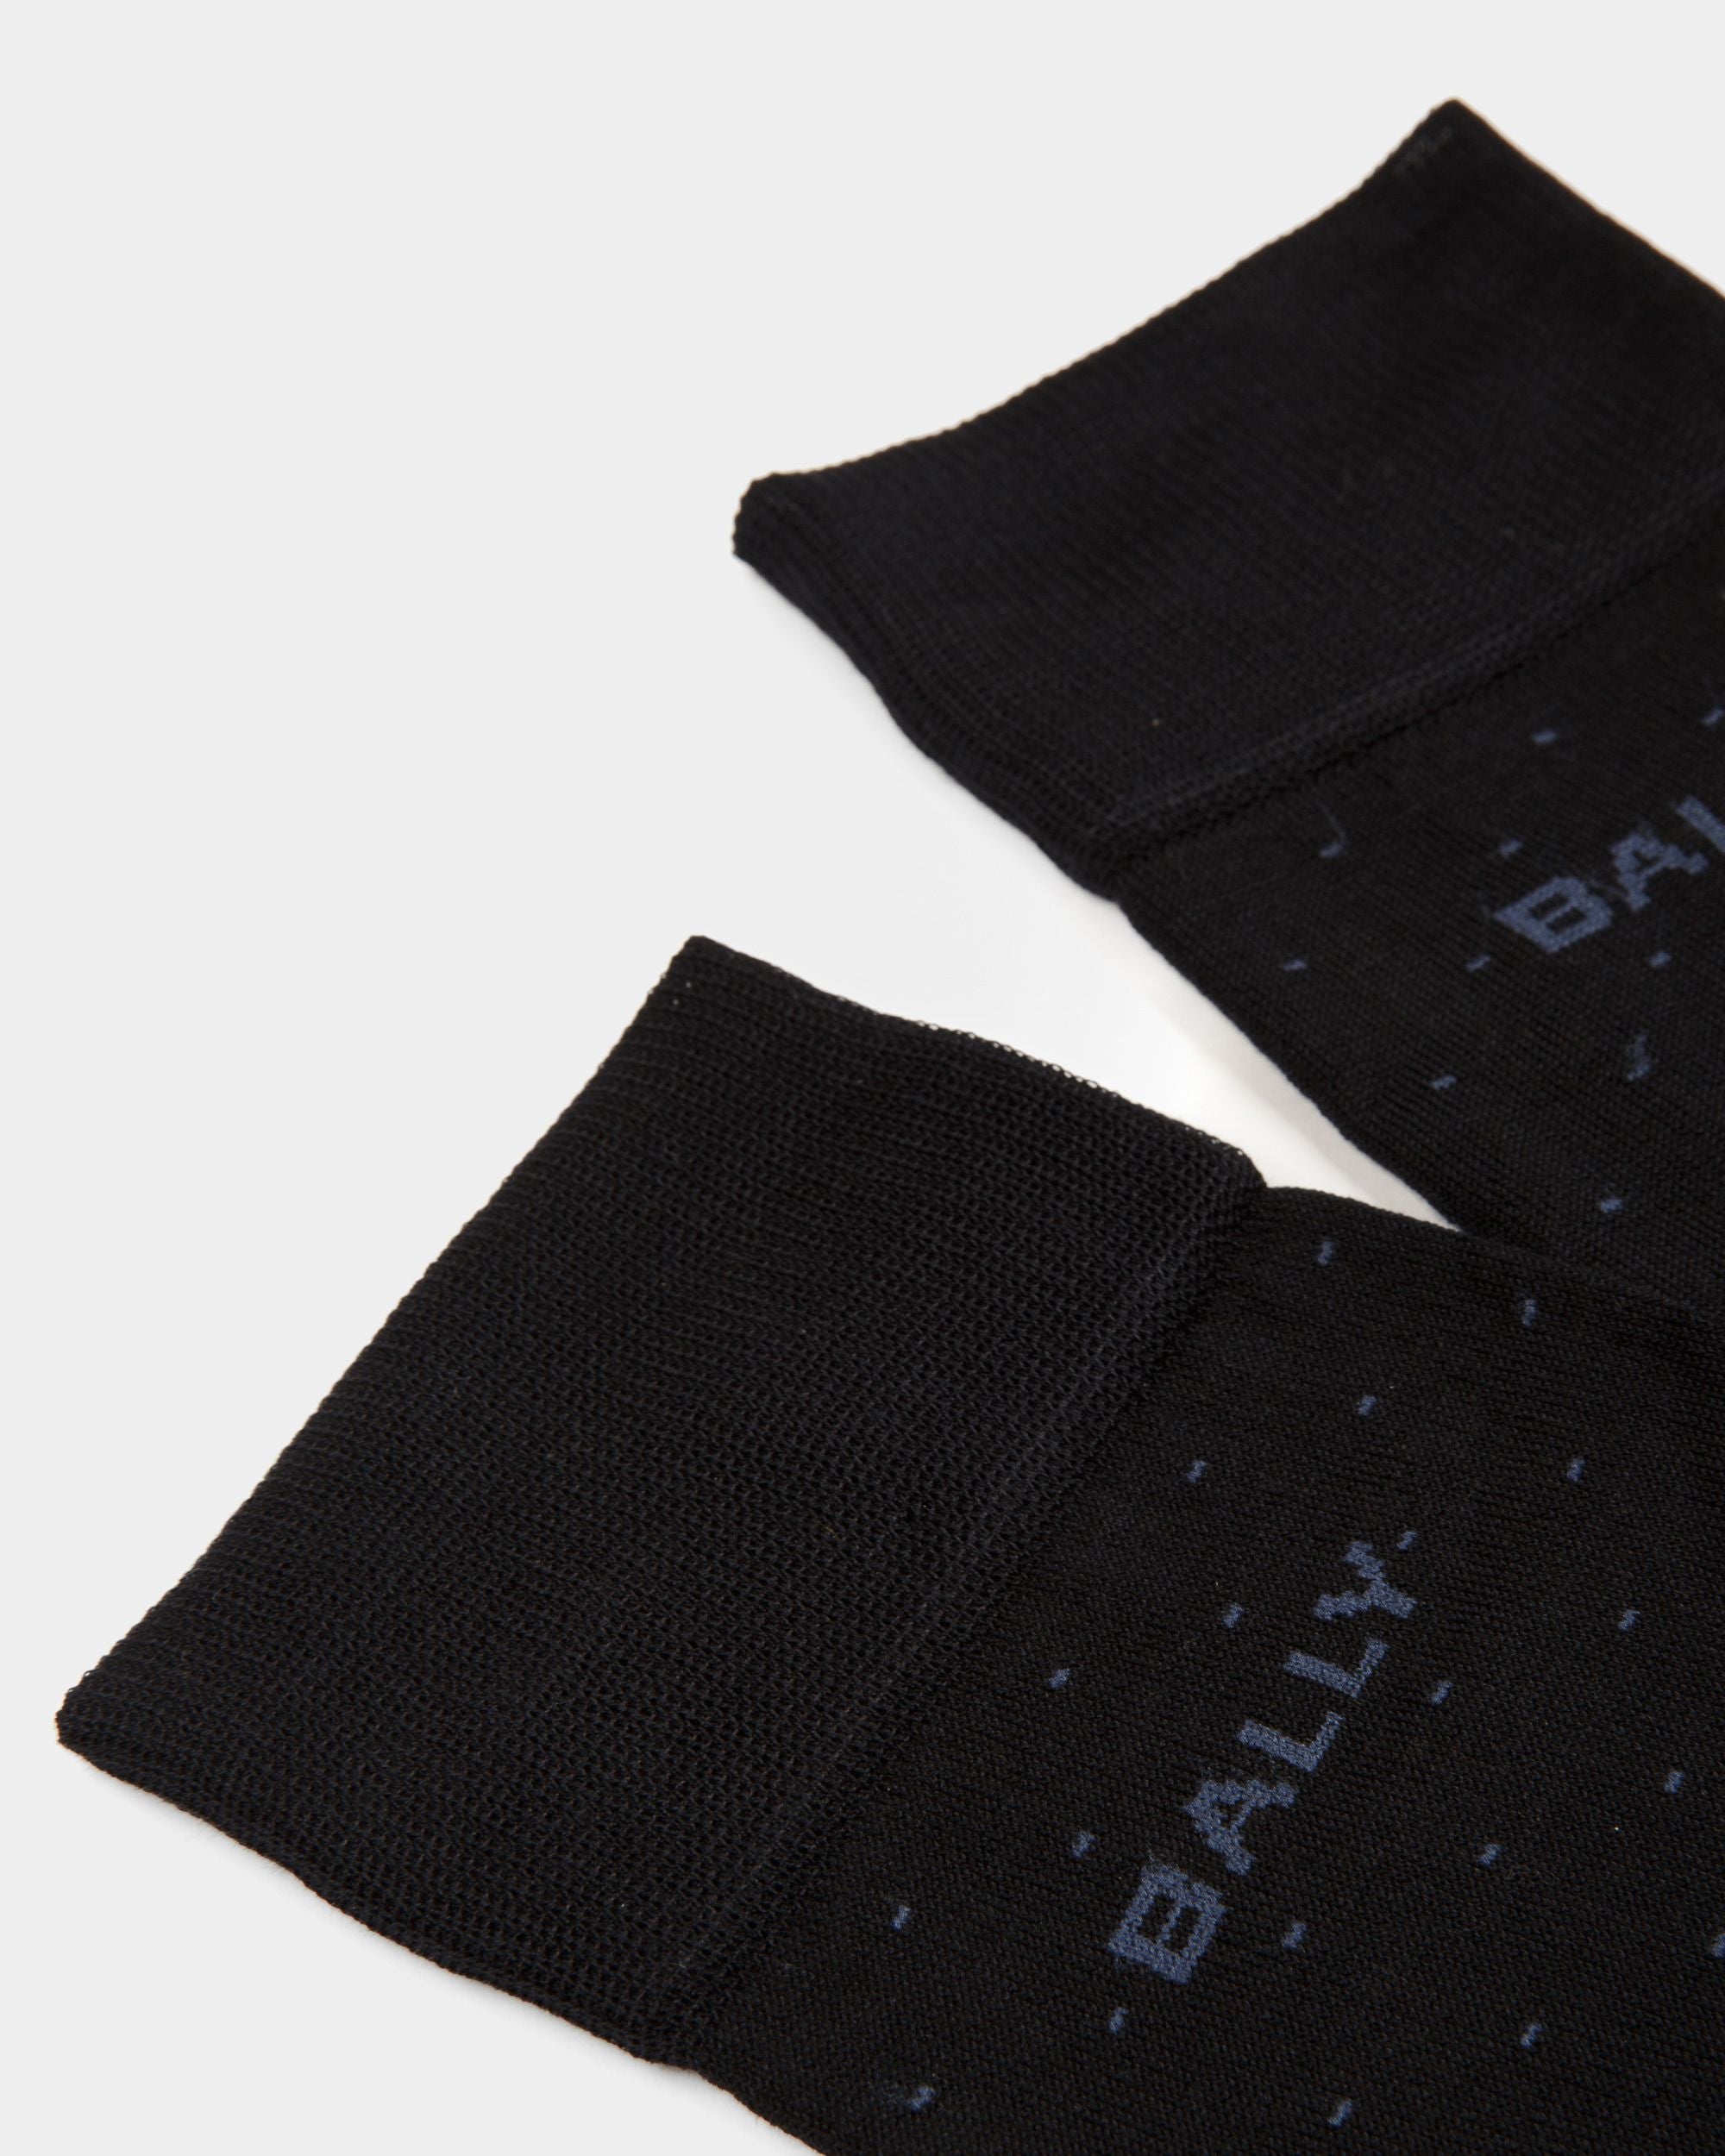 Ribbed Logo Socks | Men's Socks | Ink Cotton Mix | Bally | Still Life Detail